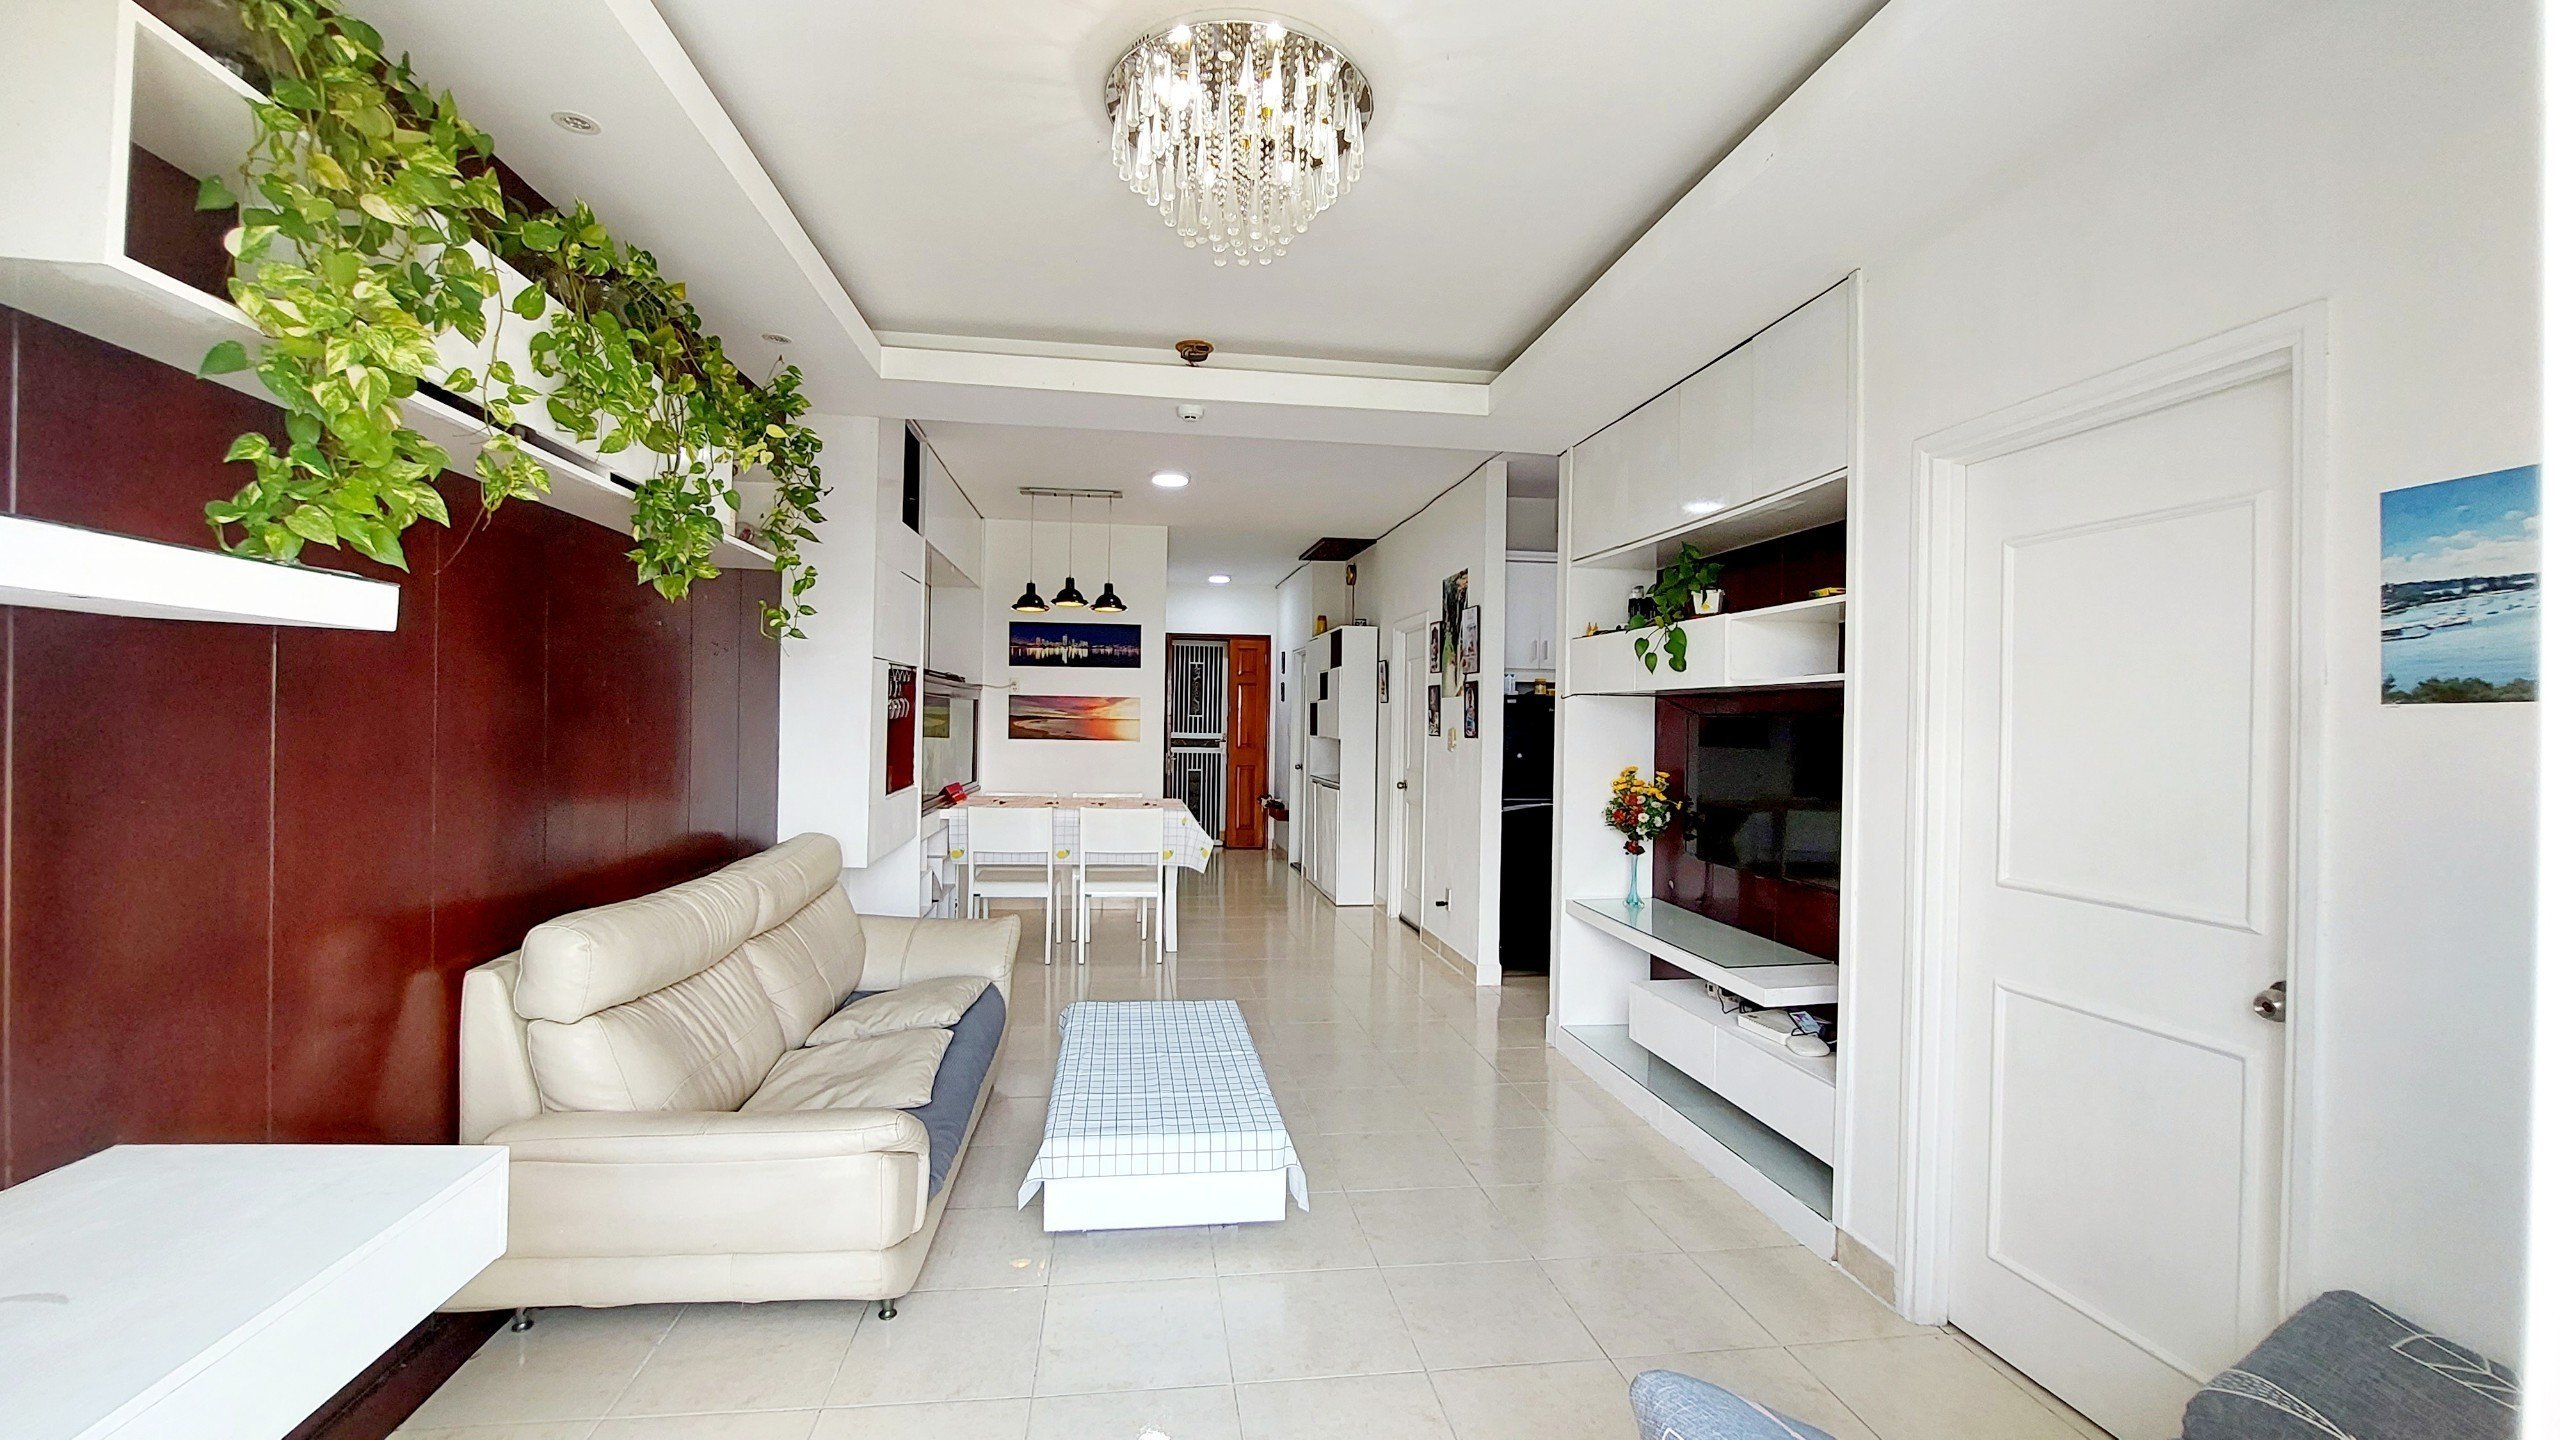 Cần bán gấp căn hộ Conic Đông Nam Á, 74m2. 2pn, 2 ban công, 2toilet,  full nội thất đẹp. 3